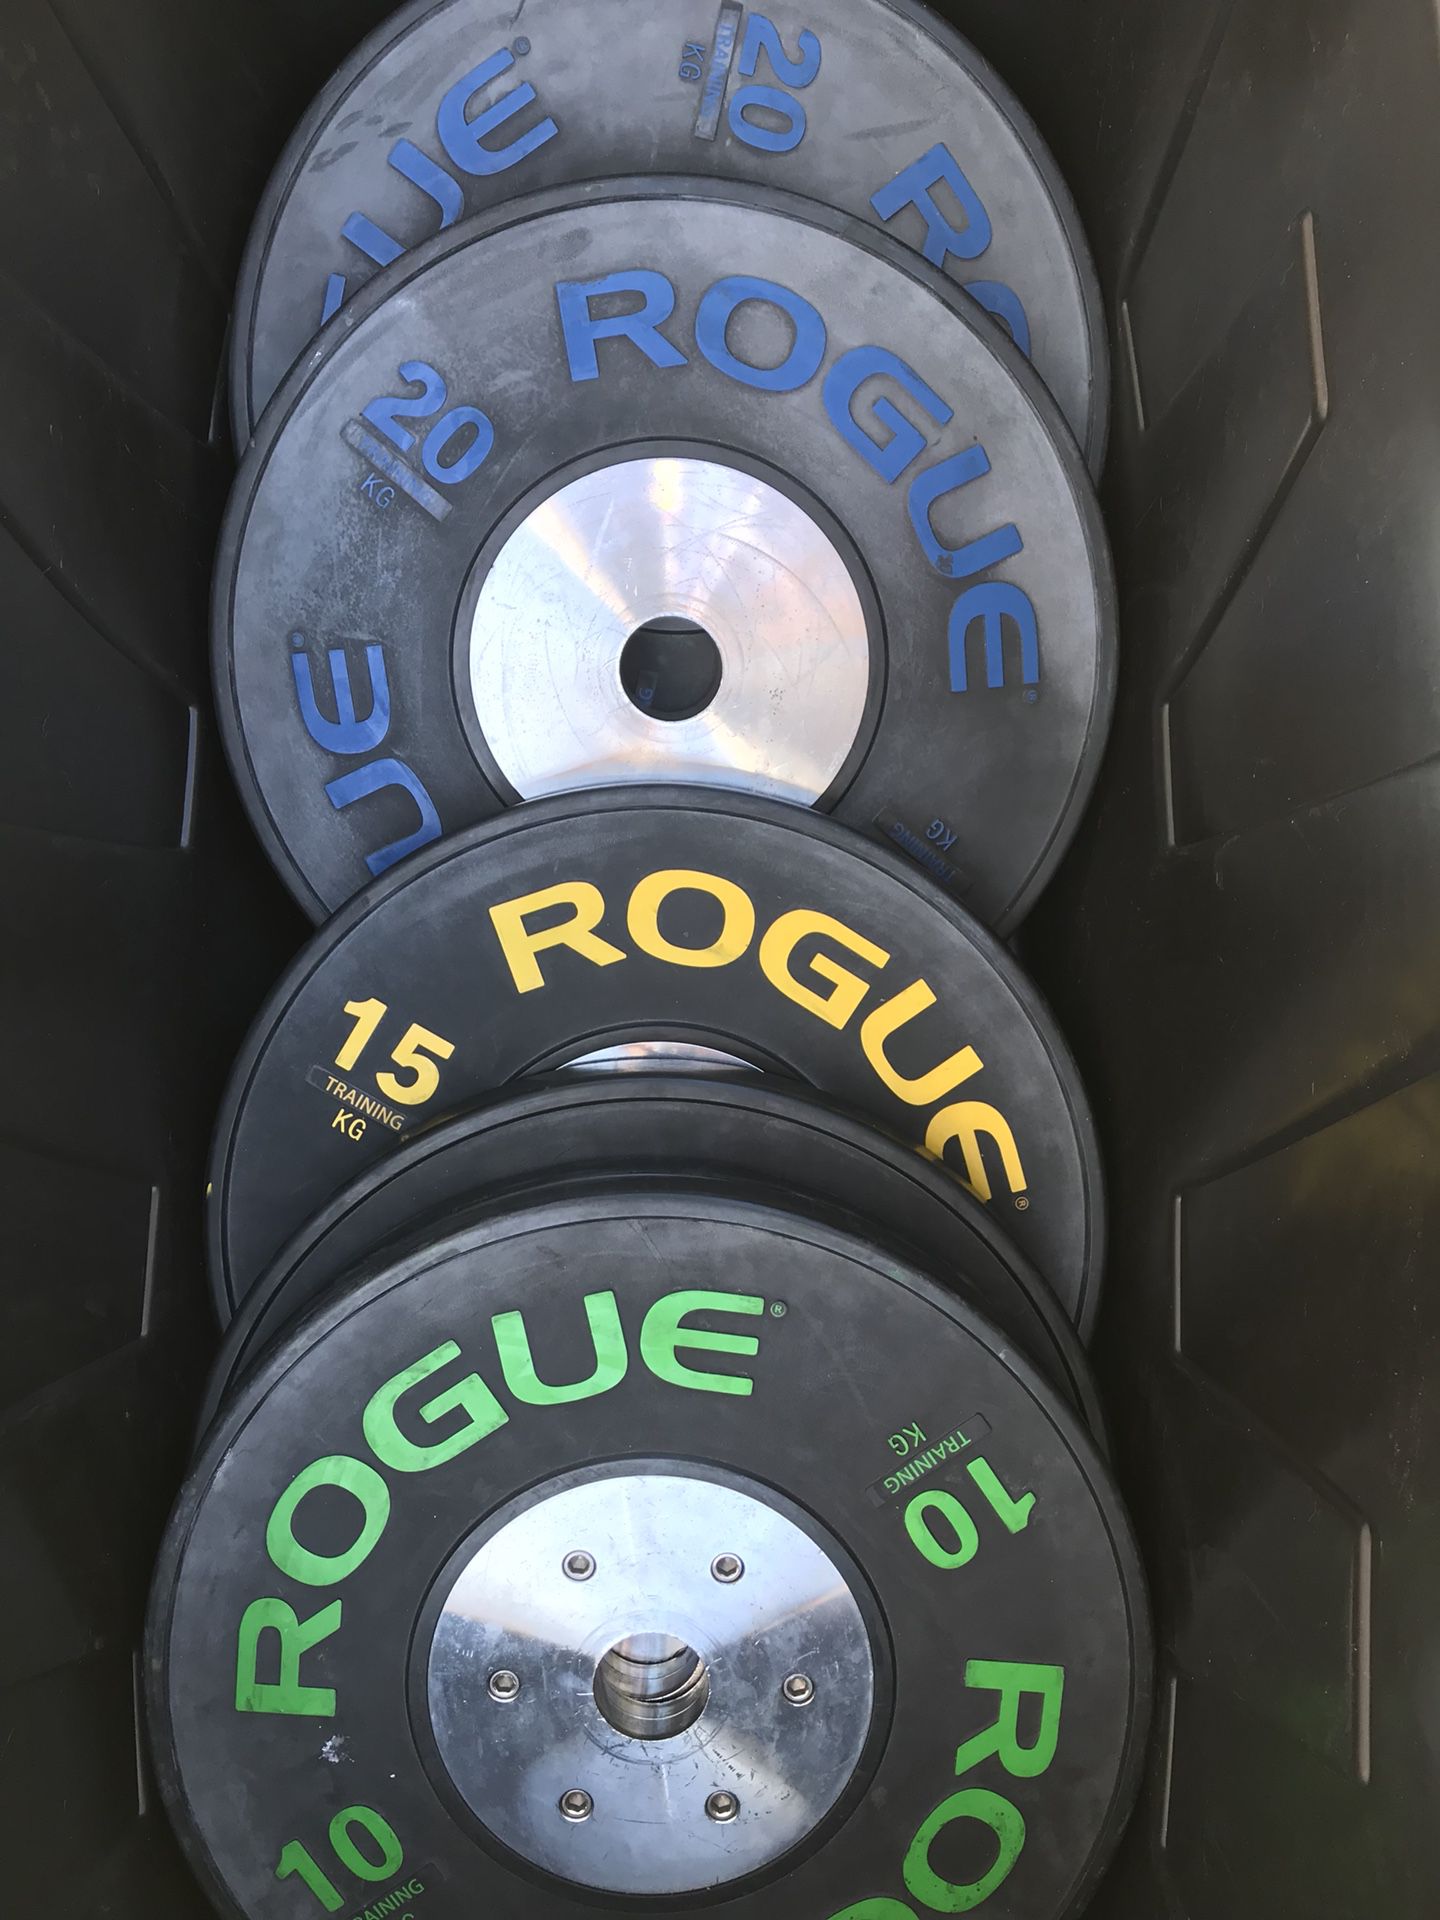 Rogue bumper plates